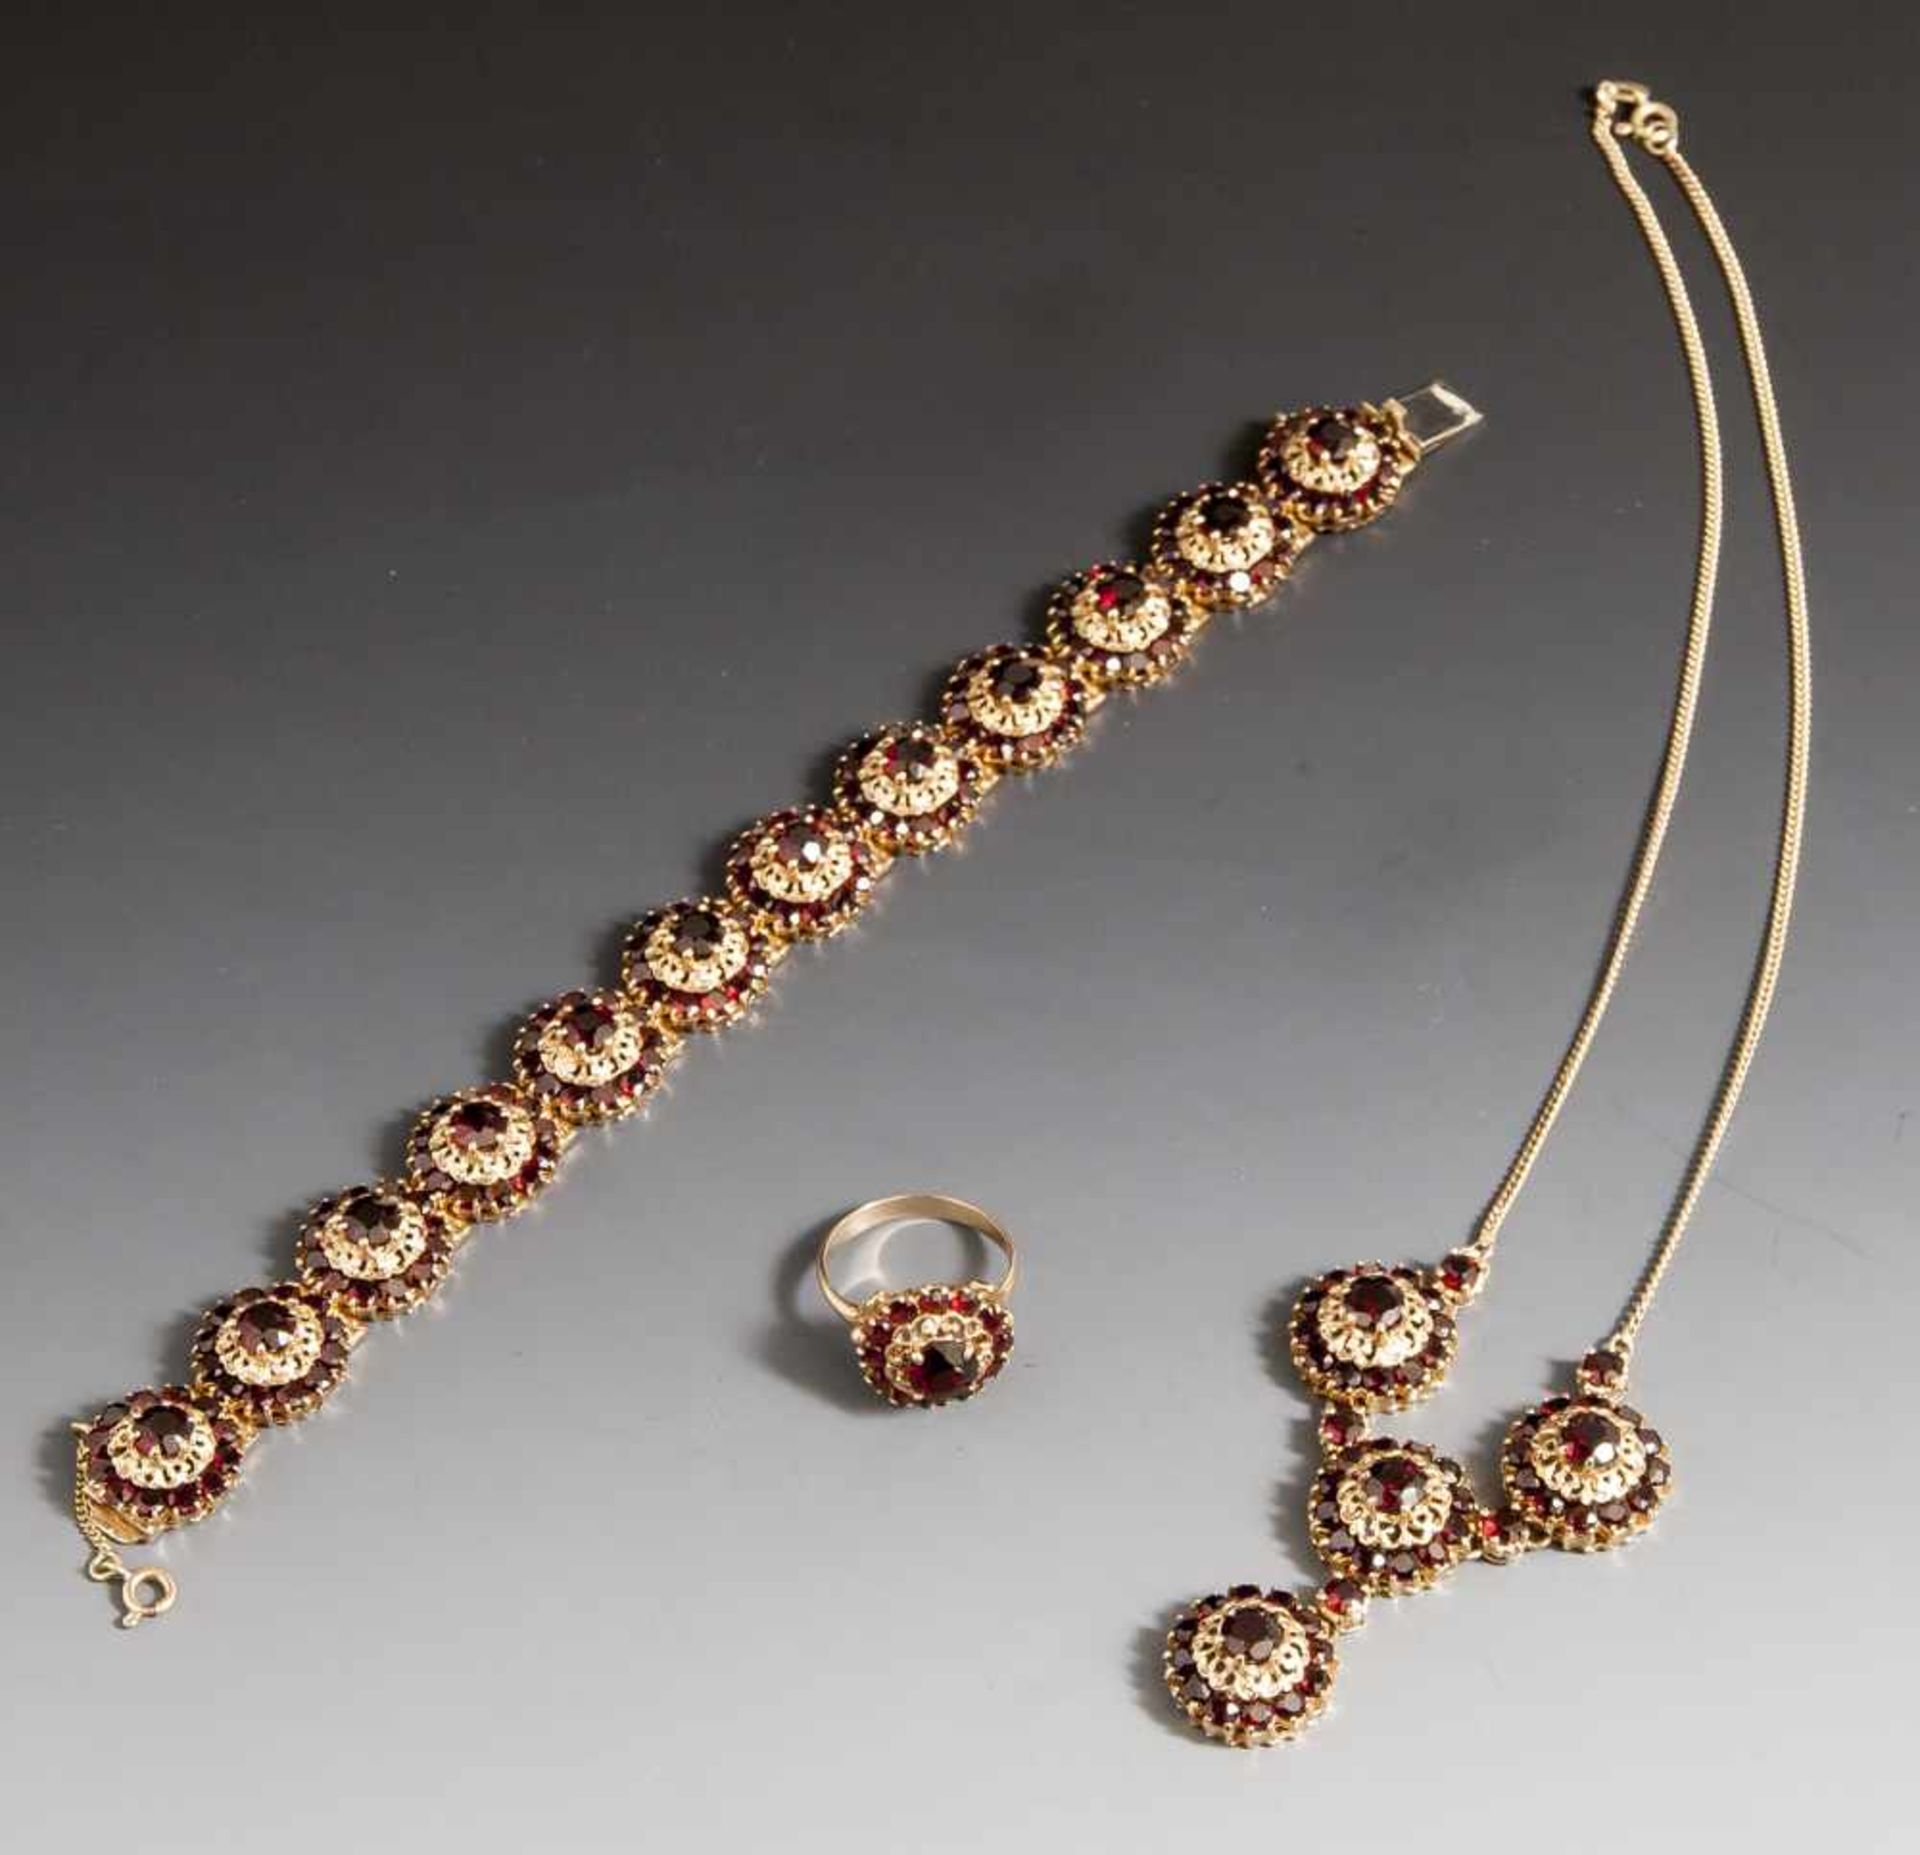 3-teiliges Schmuckset, Collier, Armband und Ring, Gelbgold 585 mit Granatenbesatz. Aufwendige